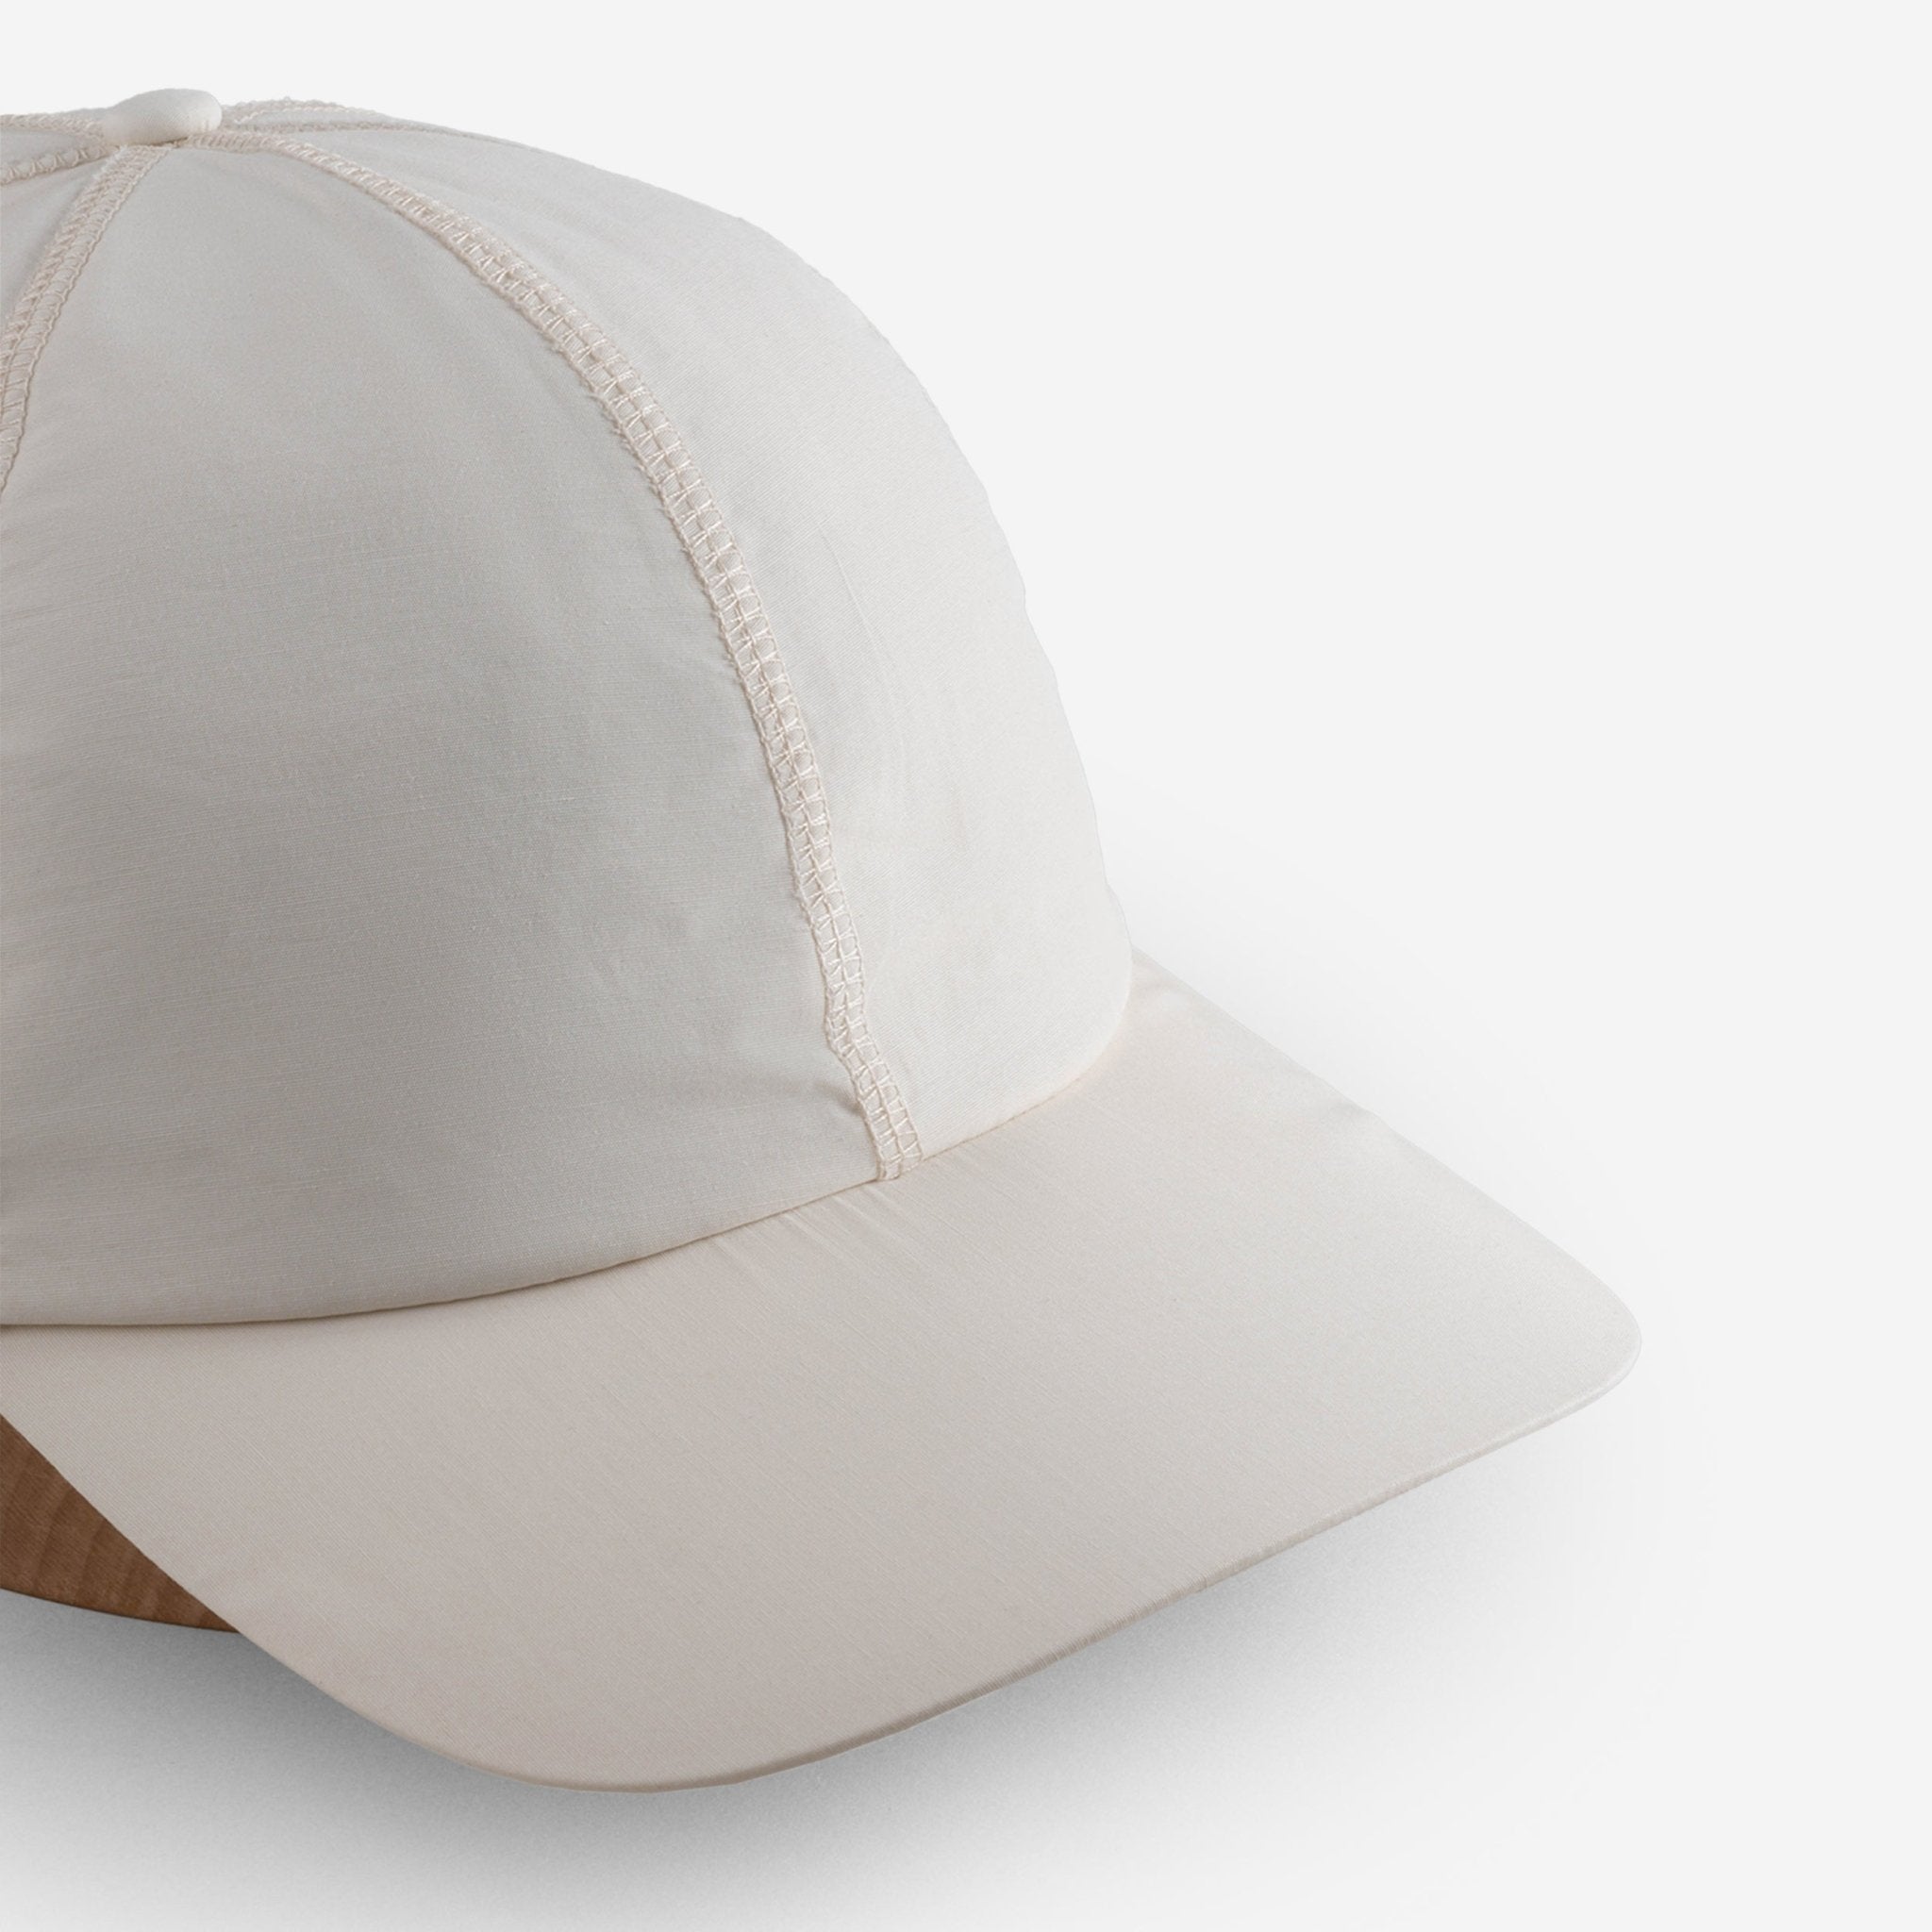 Big Straw Sun Hat / Hats For Big Heads / Oddjob Hats - Oddjob® Hats